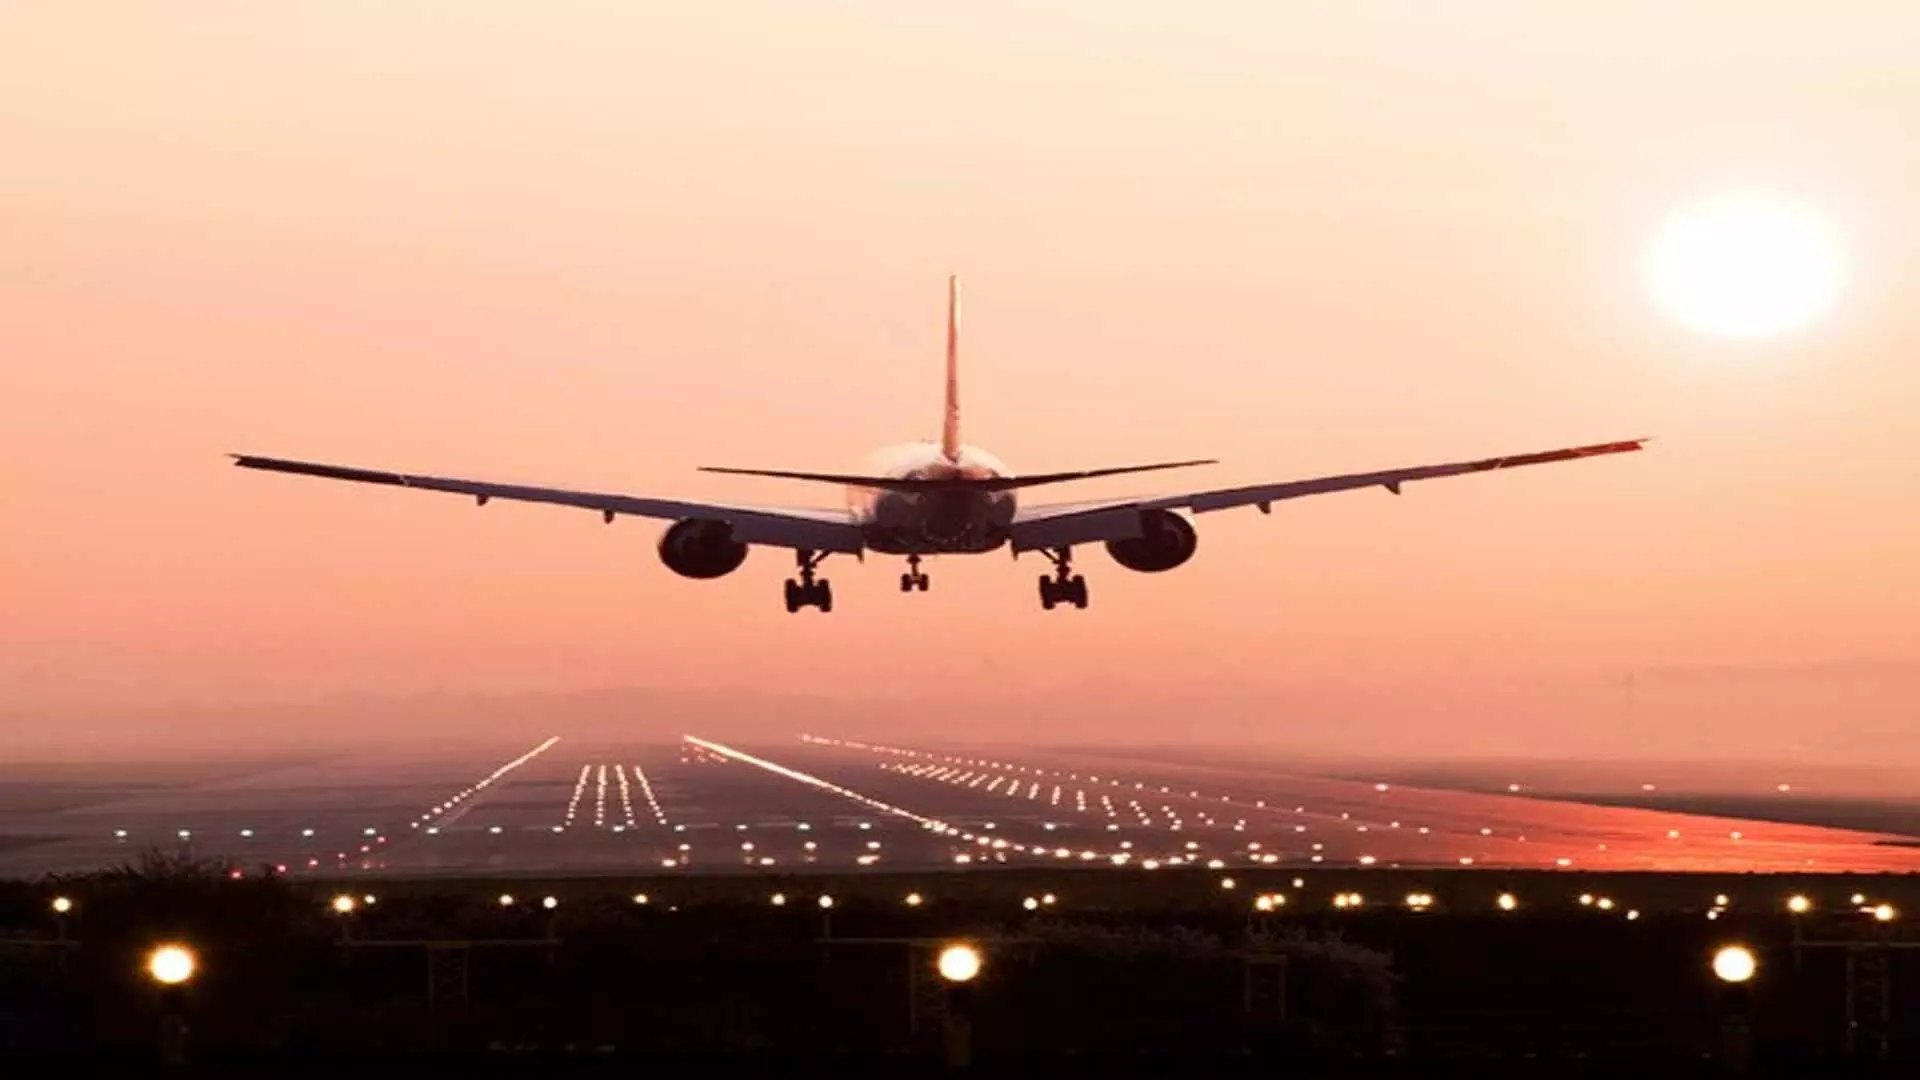 IDeCK ने कर्नाटक में प्रस्तावित दूसरे हवाई अड्डे के लिए सात स्थानों की पहचान की